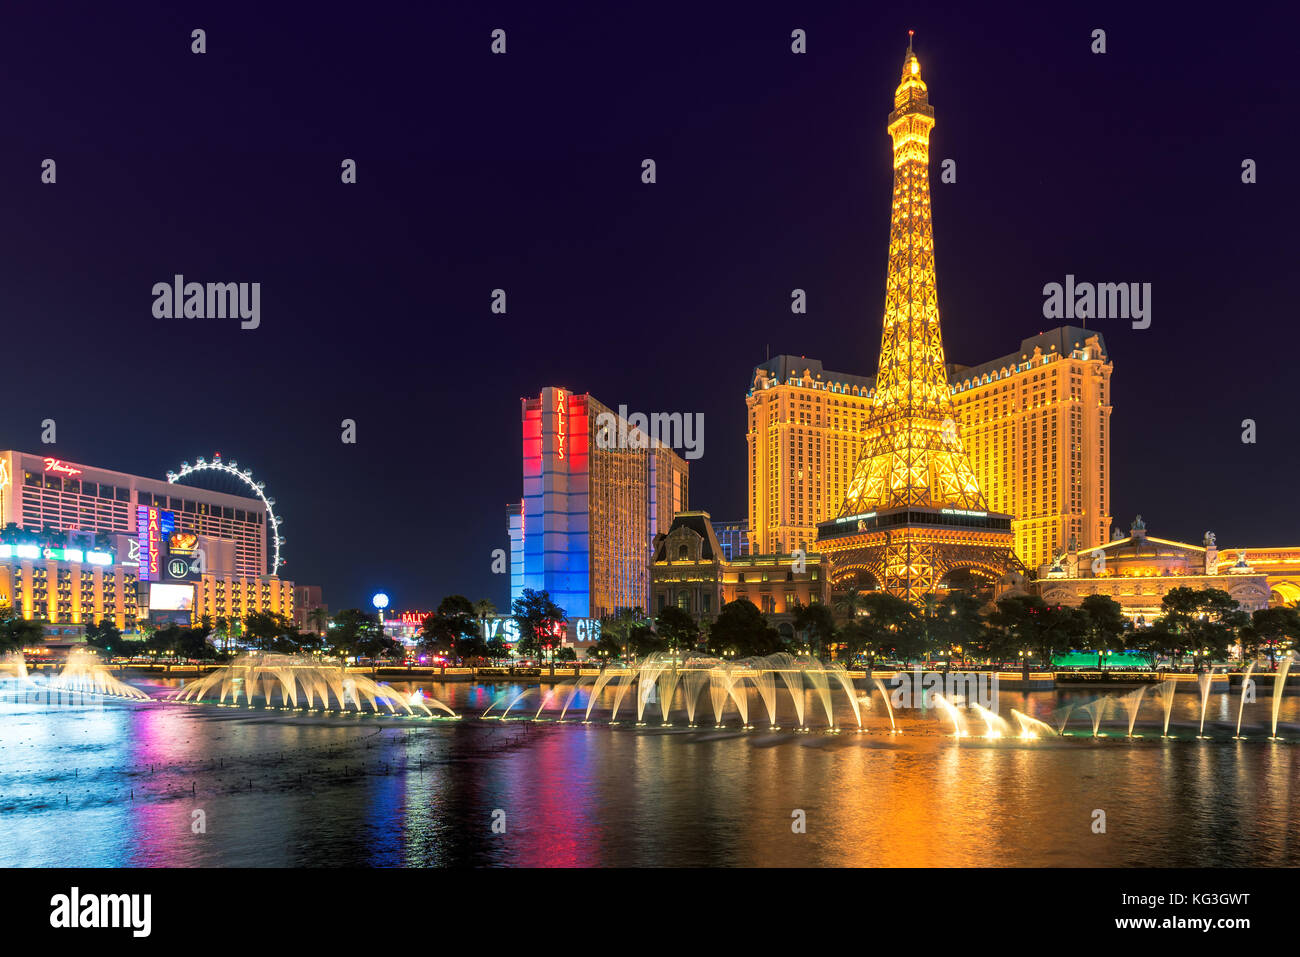 Las Vegas Strip at night Stock Photo